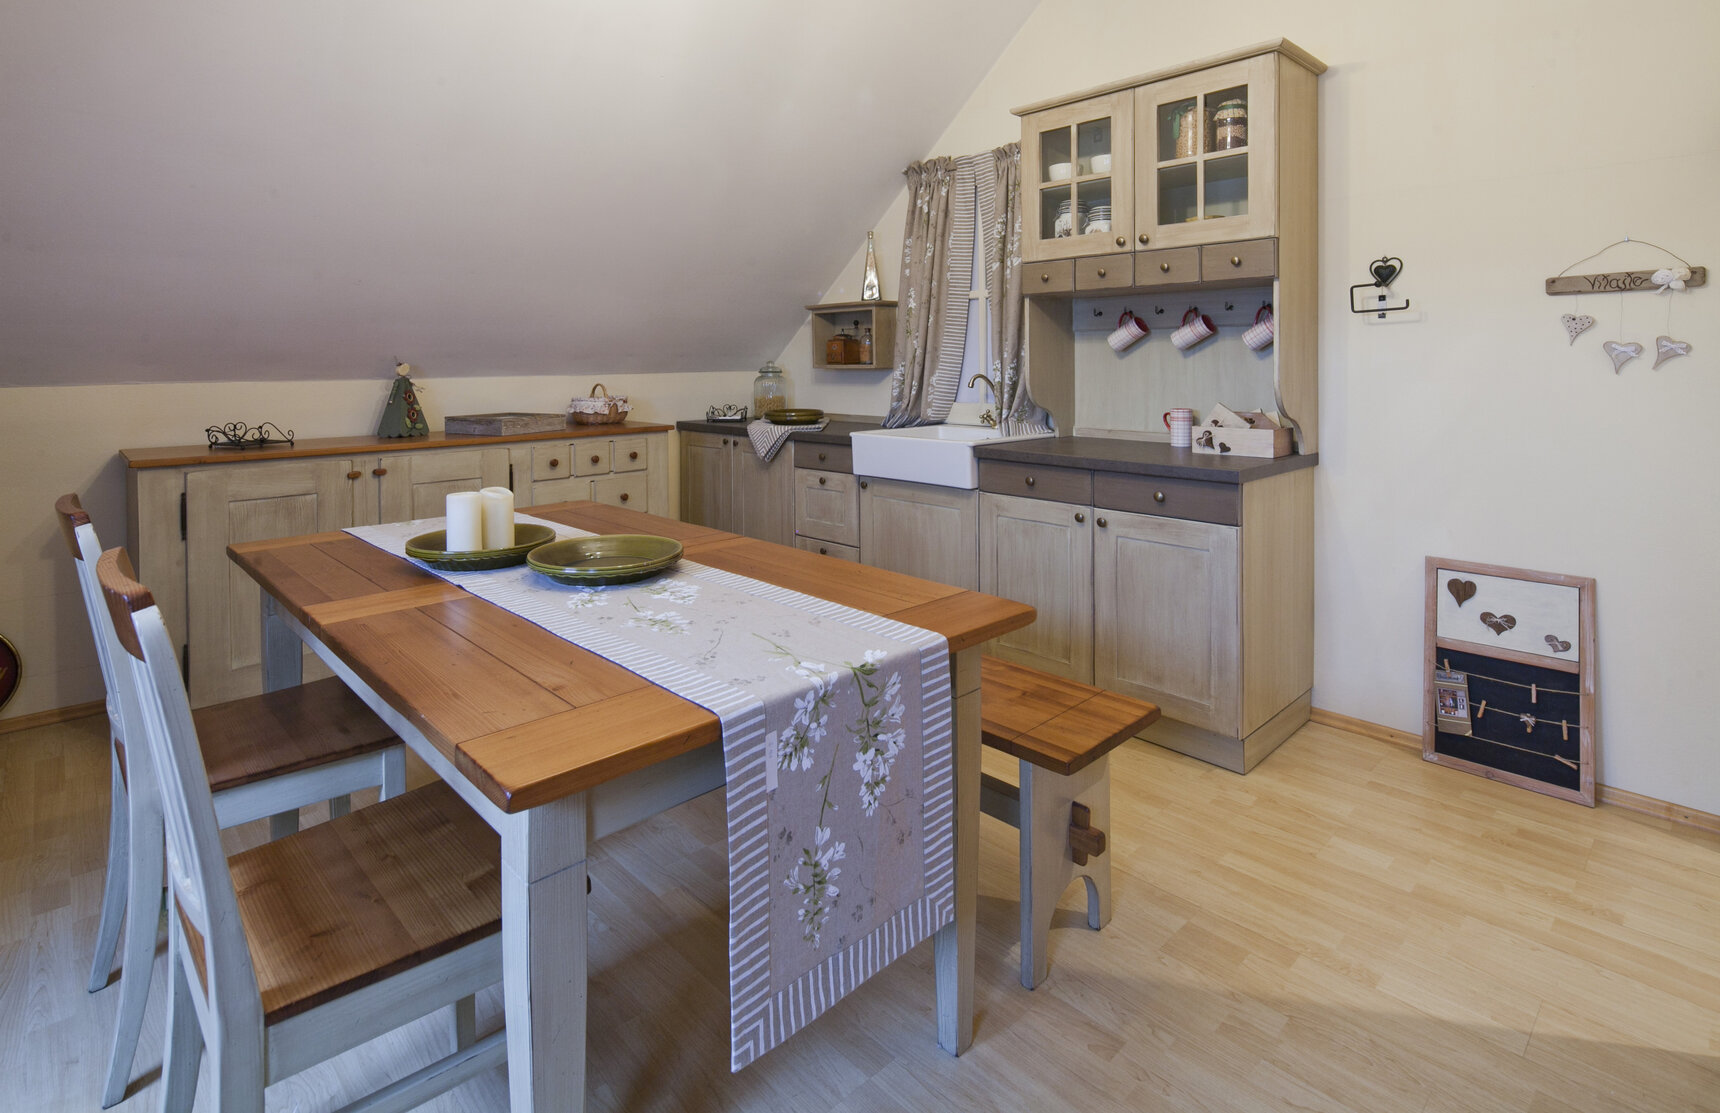 Rustikálna kuchyňa v svetlo hnedej farbe s jedálenským stolom, stoličkami a lavicou. Kuchynská doska je z dreva a dvierka na kuchynskej linke majú drevené okrúhle úchytky